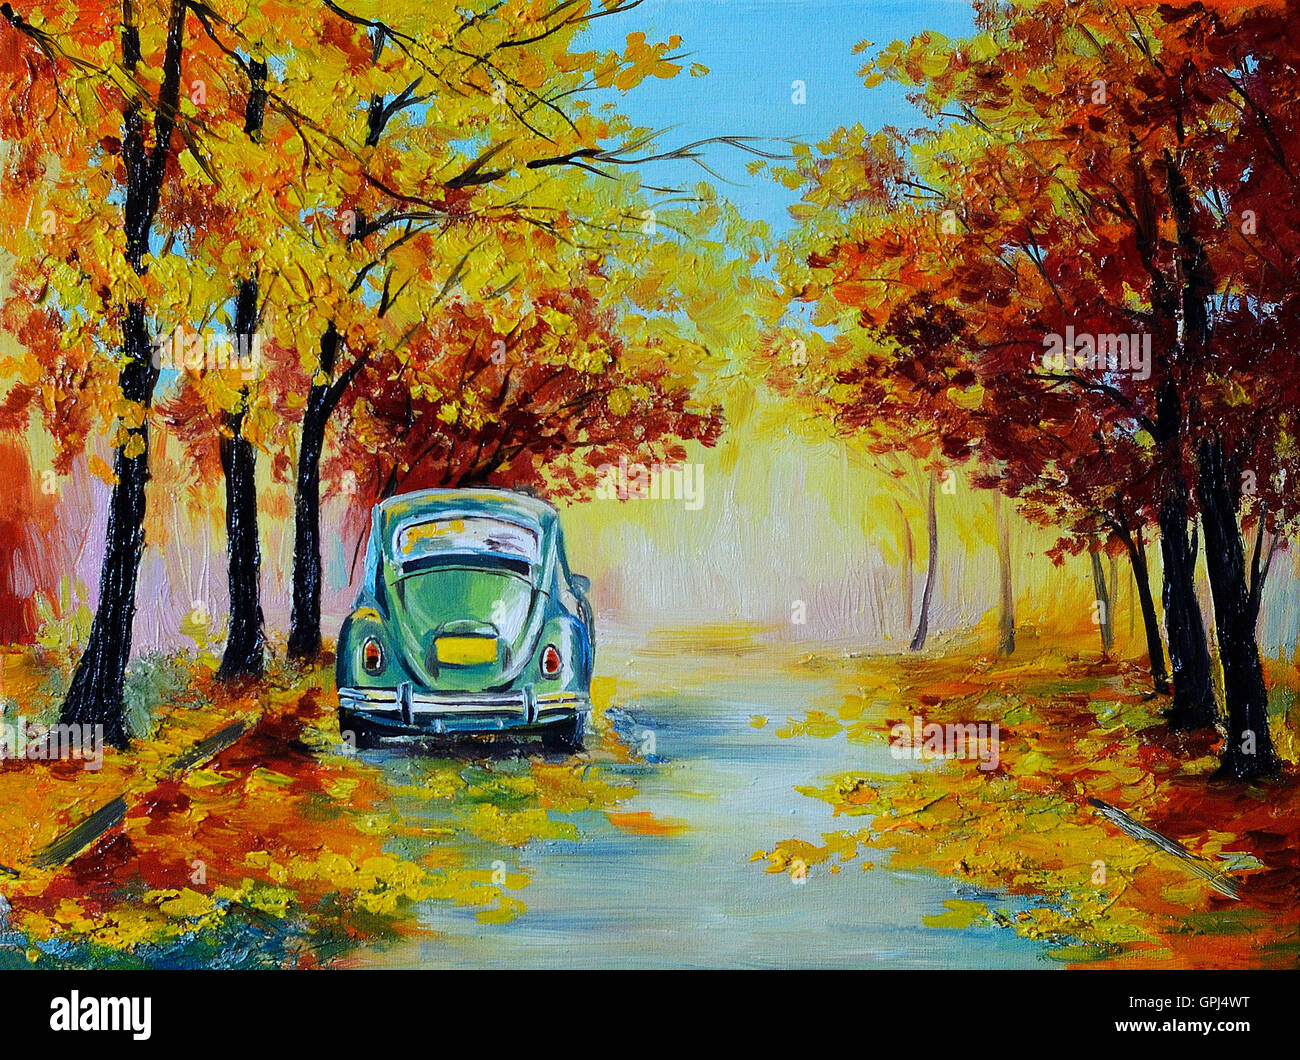 Paysage peinture à l'huile - voiture dans l'autumn forest road, faite dans le style de l'impressionnisme, retro Banque D'Images